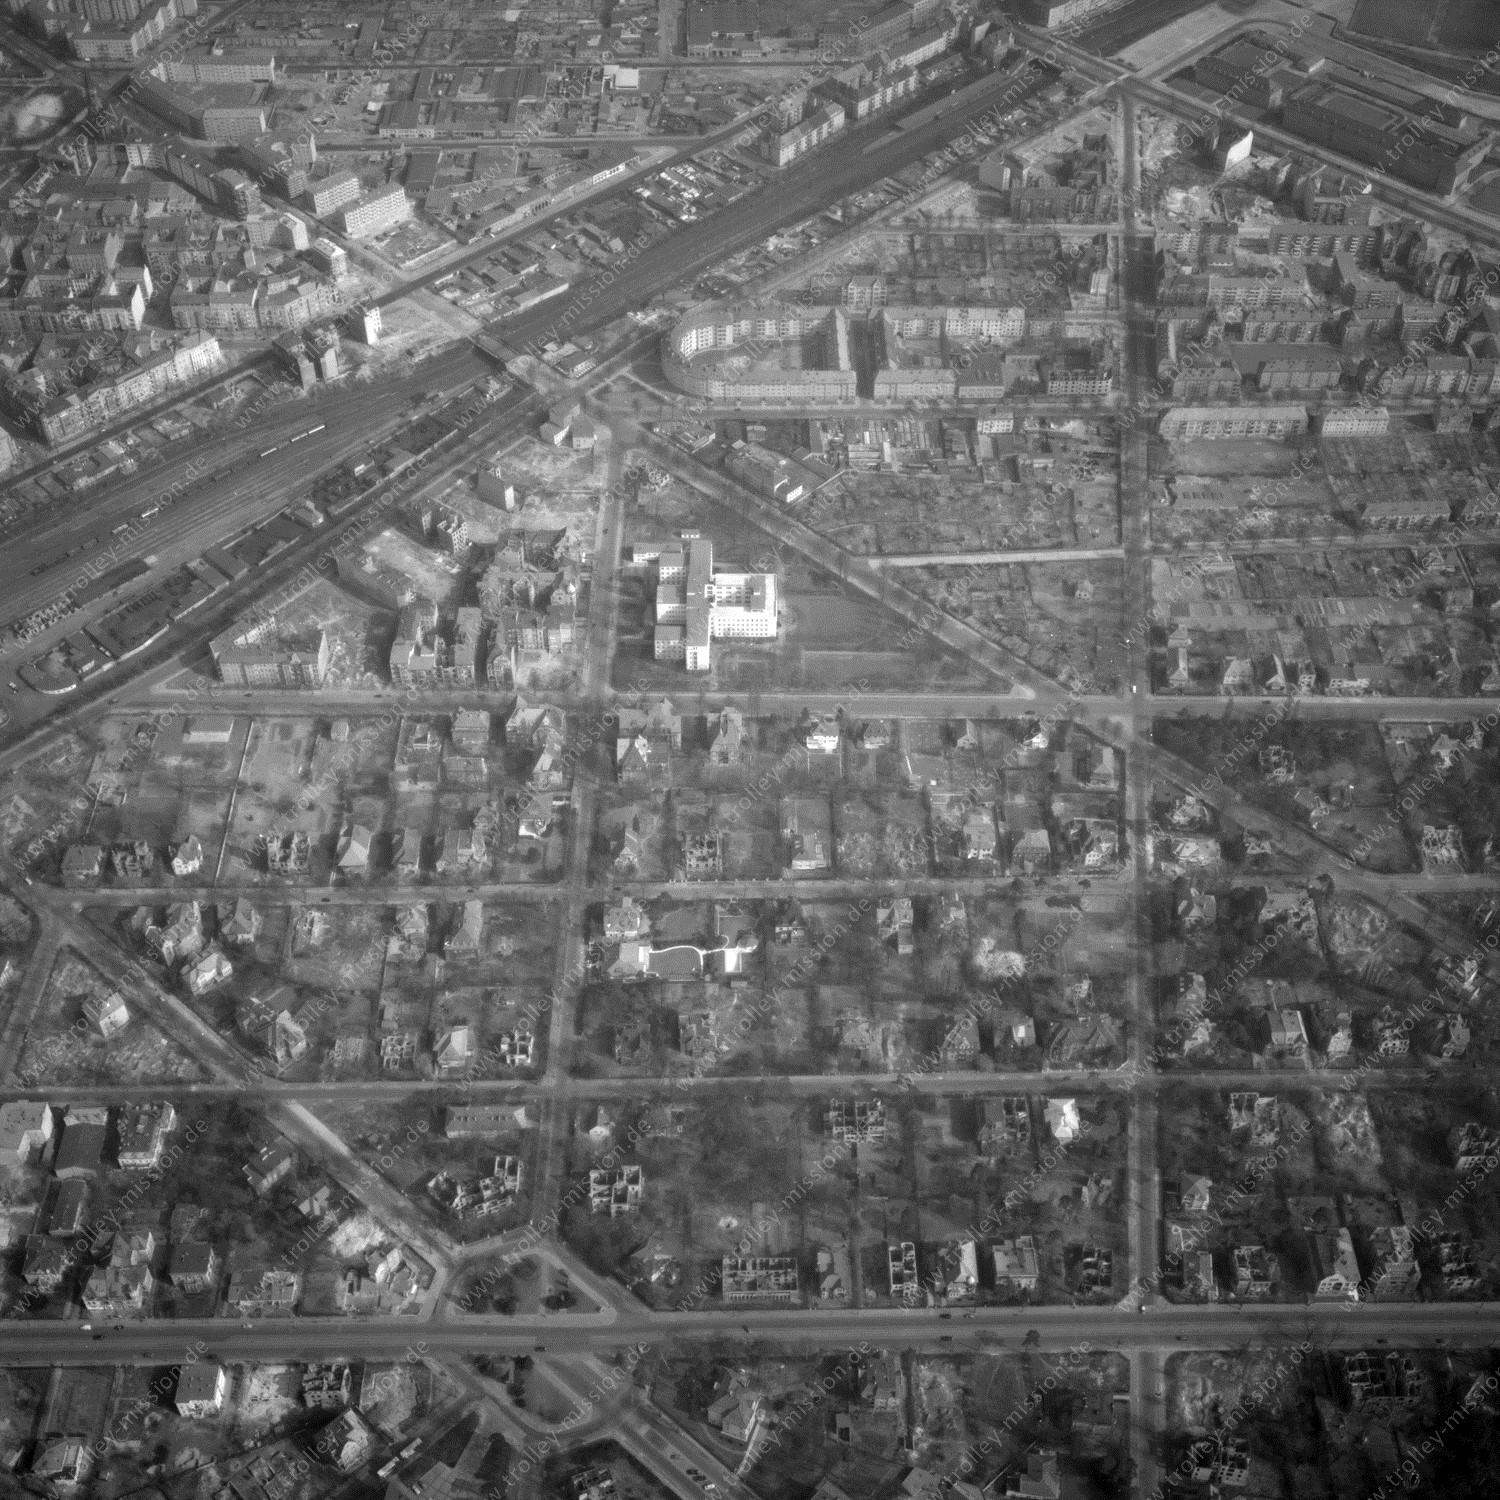 Alte Fotos und Luftbilder von Berlin - Luftbildaufnahme Nr. 06 - Historische Luftaufnahmen von West-Berlin aus dem Jahr 1954 - Flugstrecke Alpha